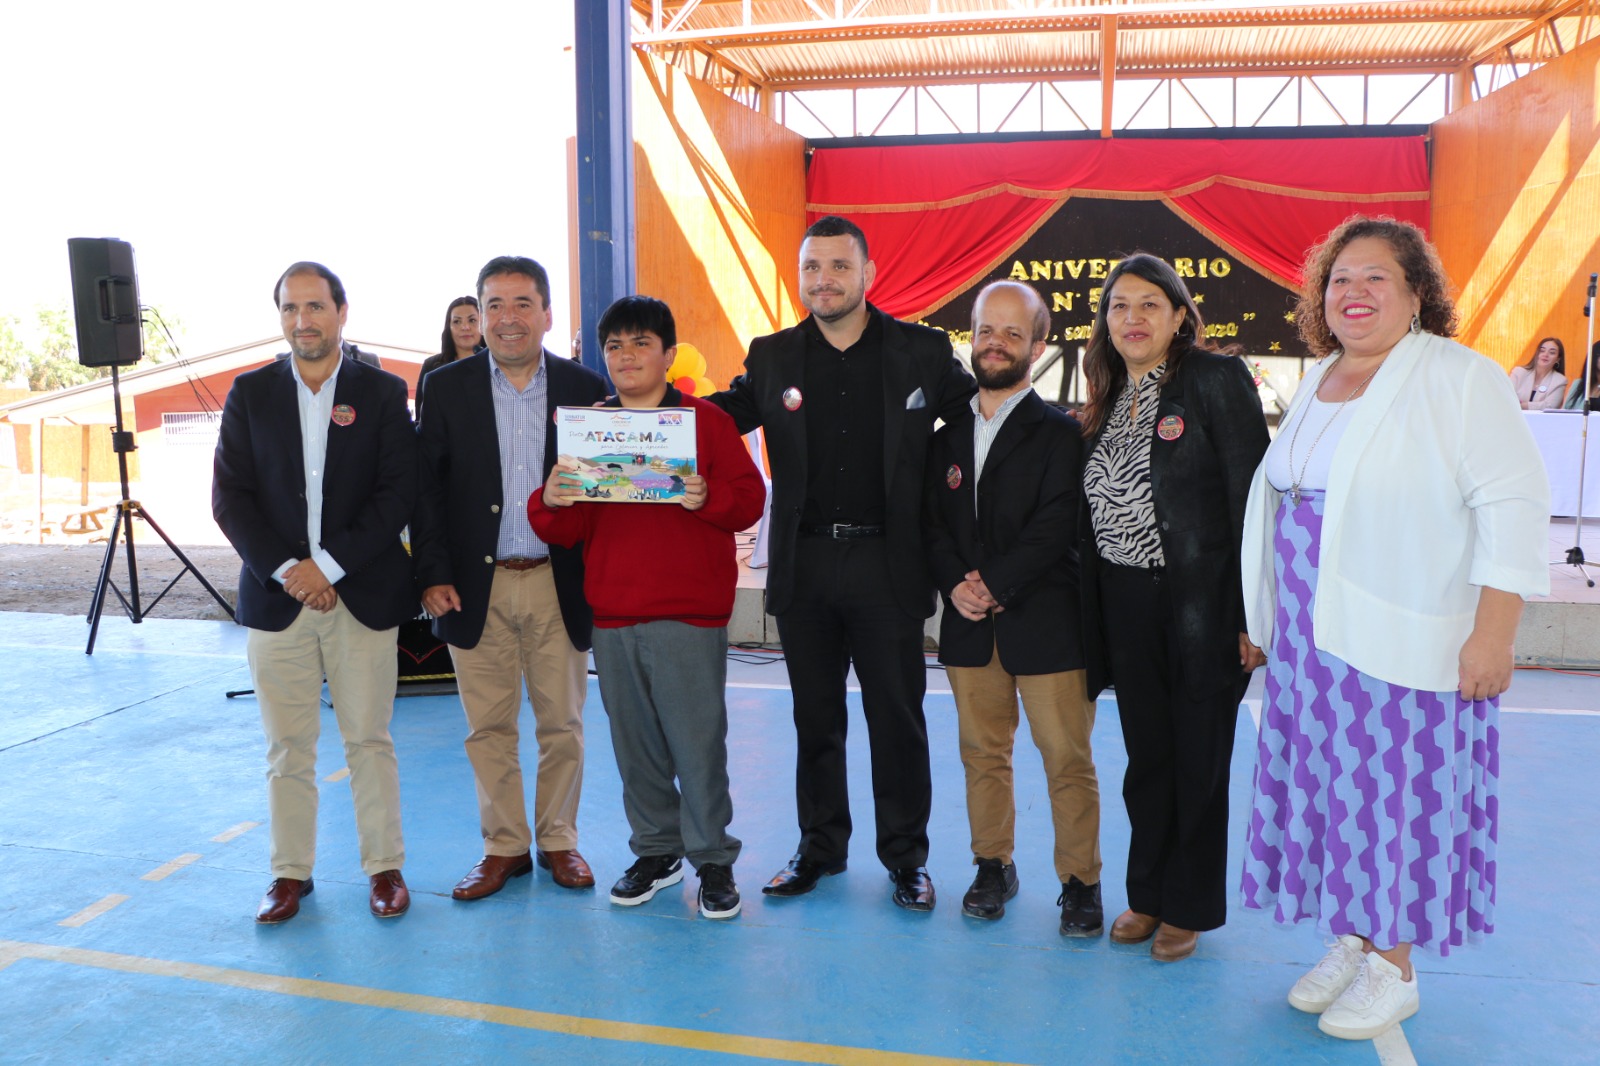 Gobierno Regional de Atacama y Sernatur realizan lanzamiento del libro “Pinta Atacama” en el marco del aniversario n°55 de la Escuela Las Brisas